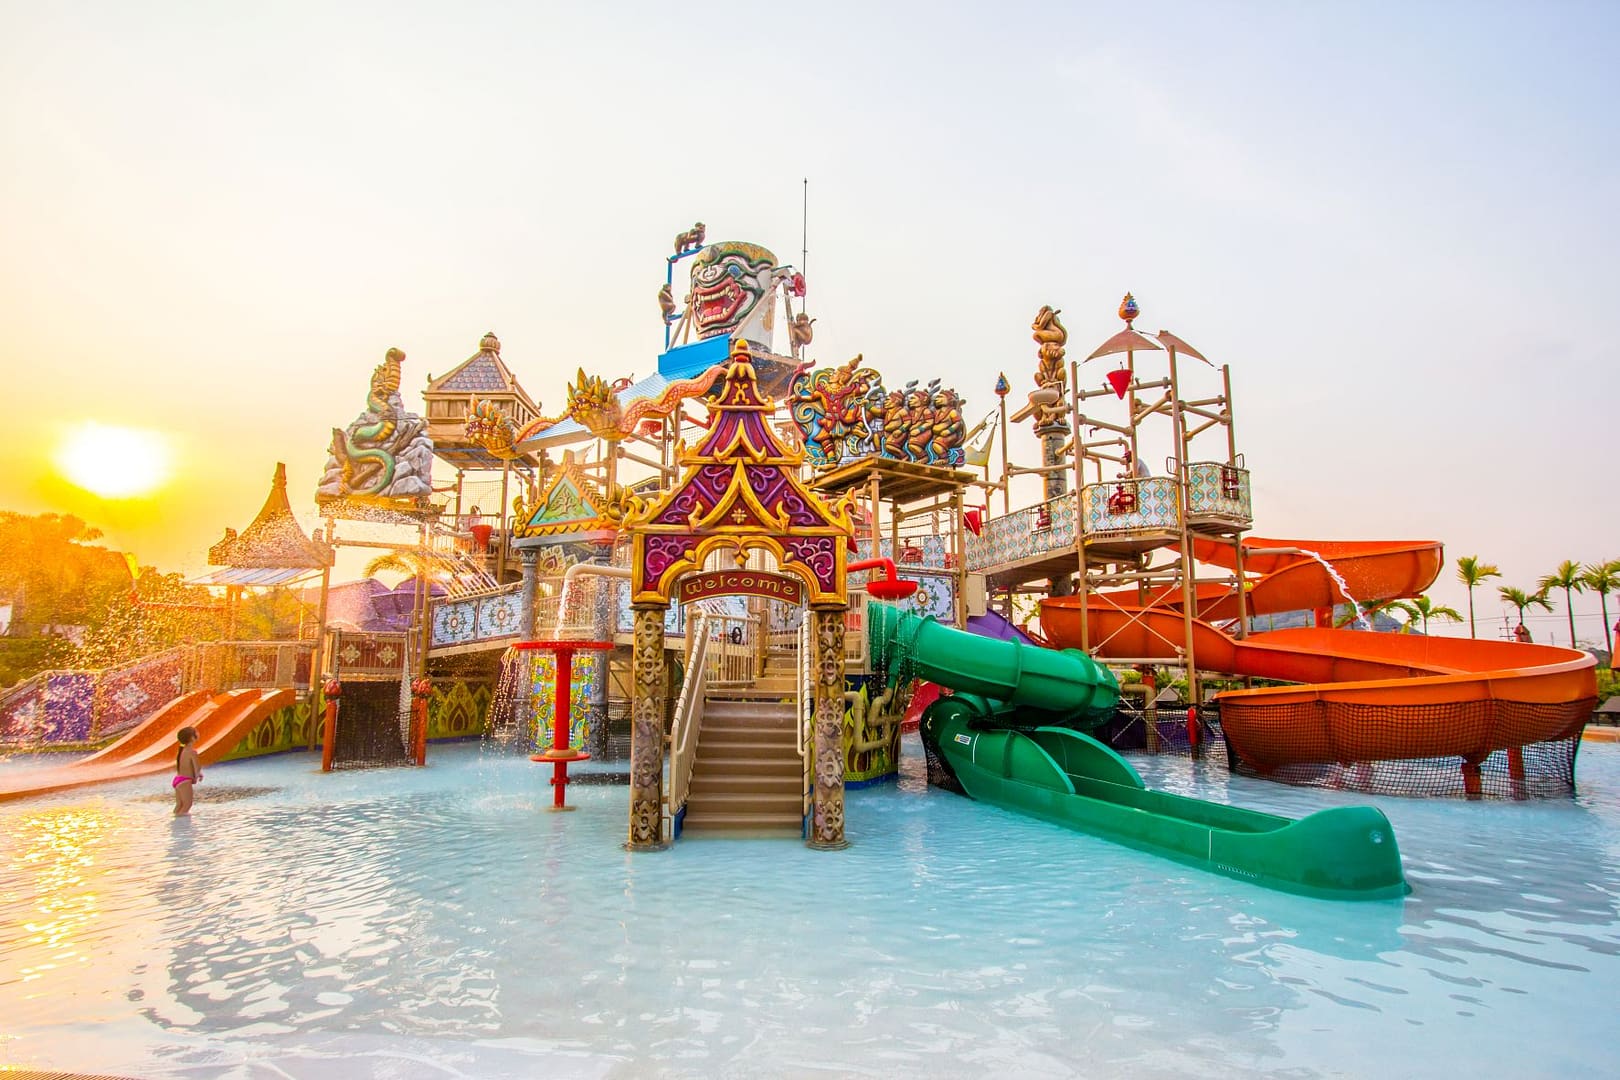 thai-themed theme park